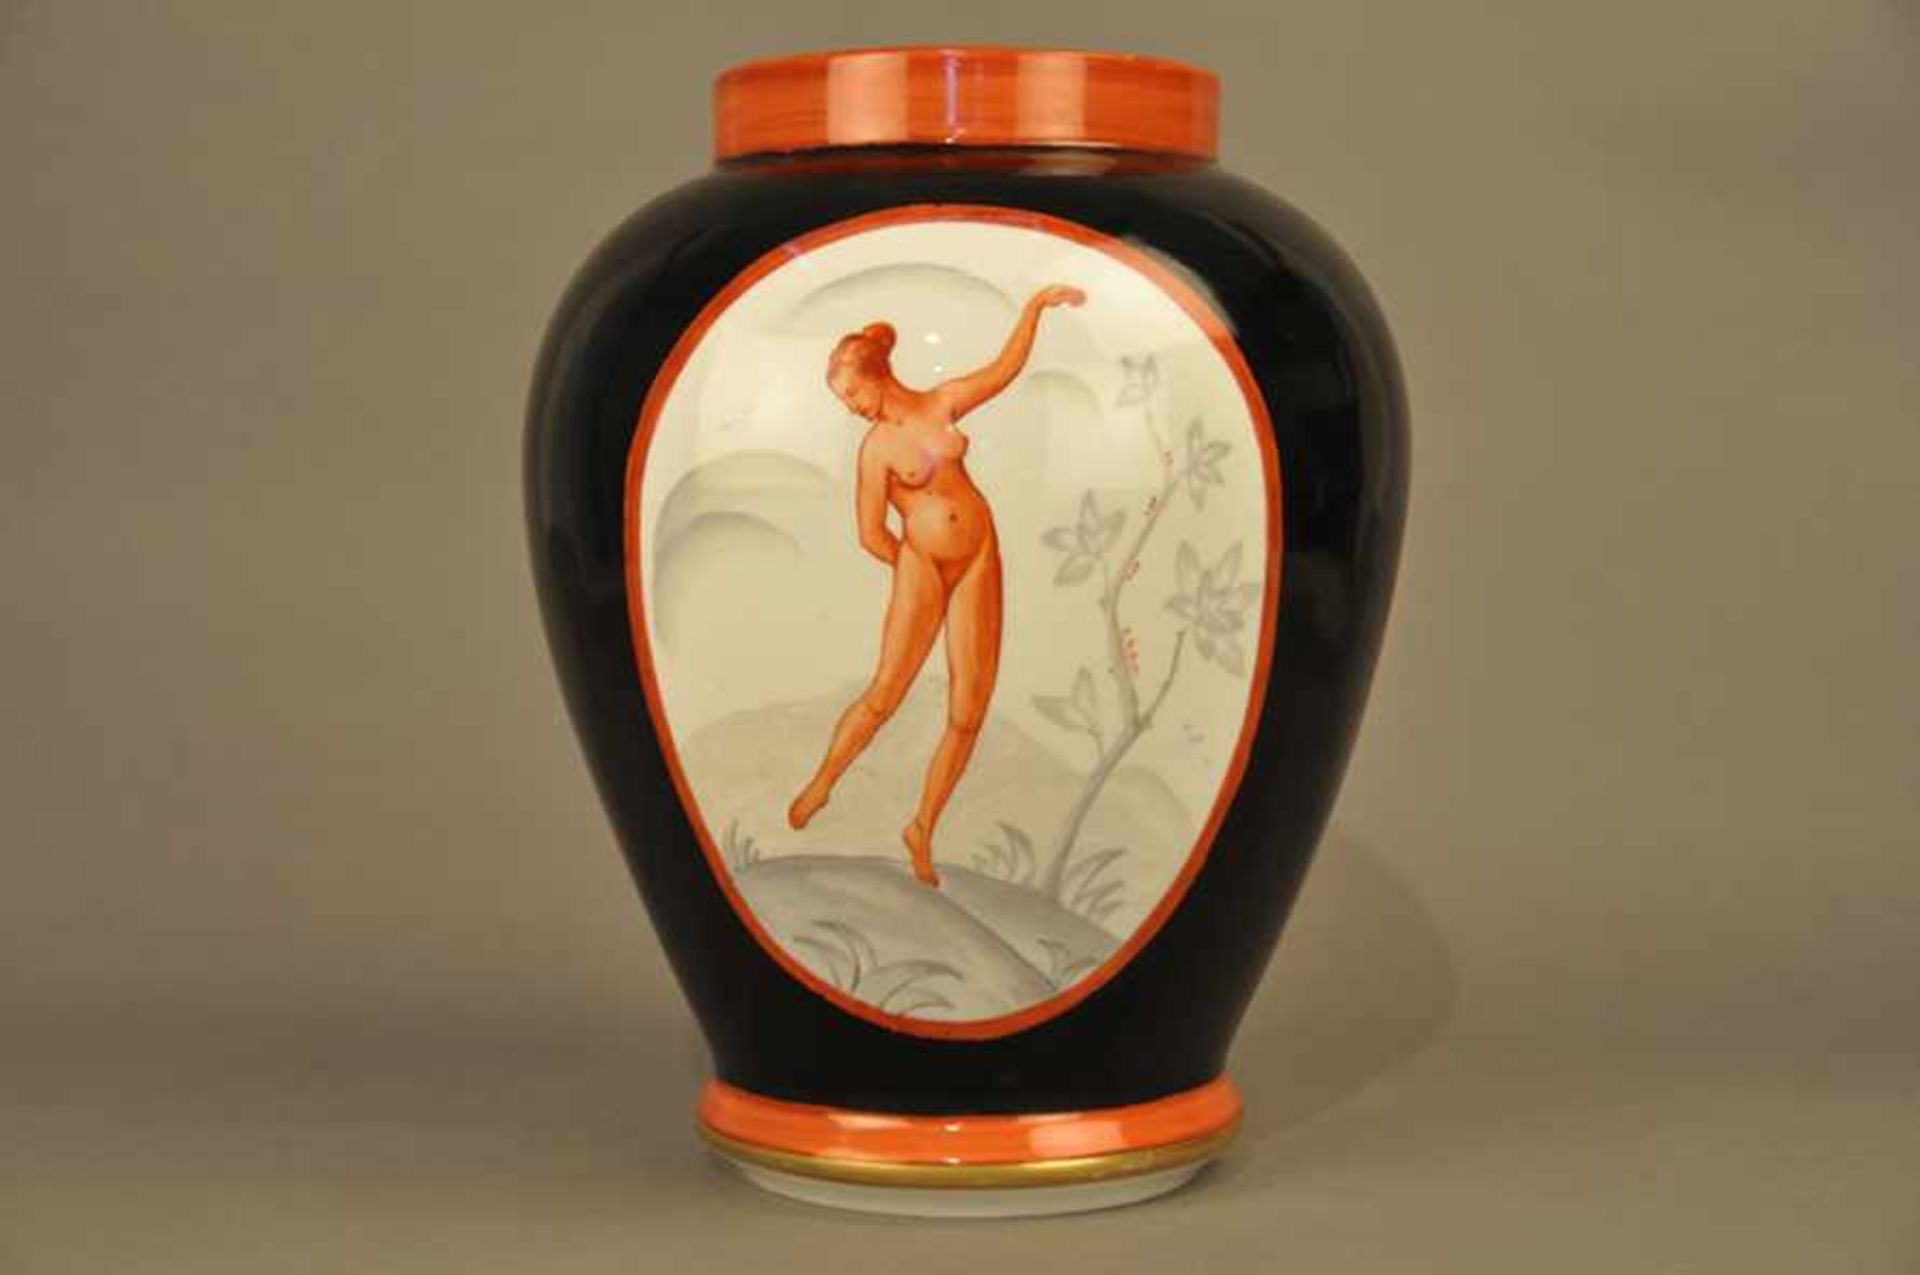 Bauchige Vase, Jugendstil / Art Deco.Schwarzer Fond, 2 Kartuschen mit weiblichen Akten in Rot,